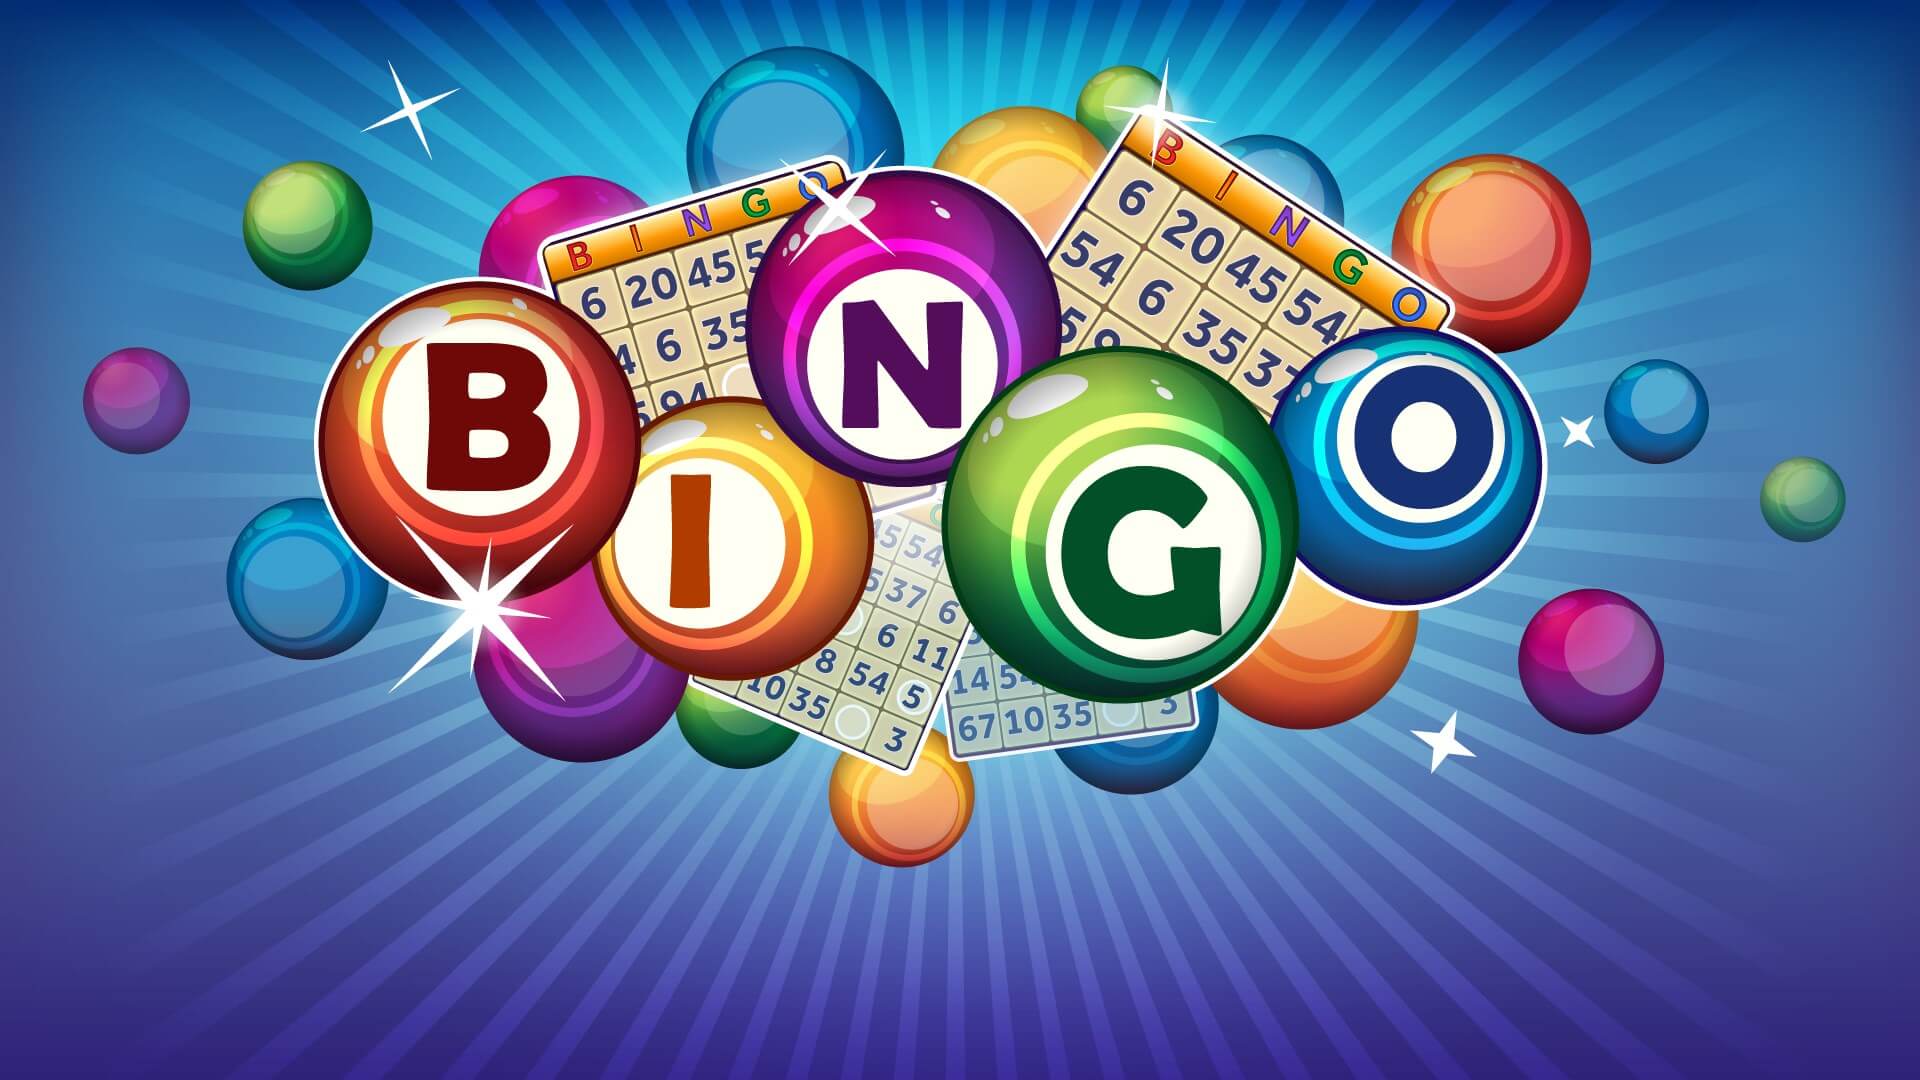 8k8 online bingo